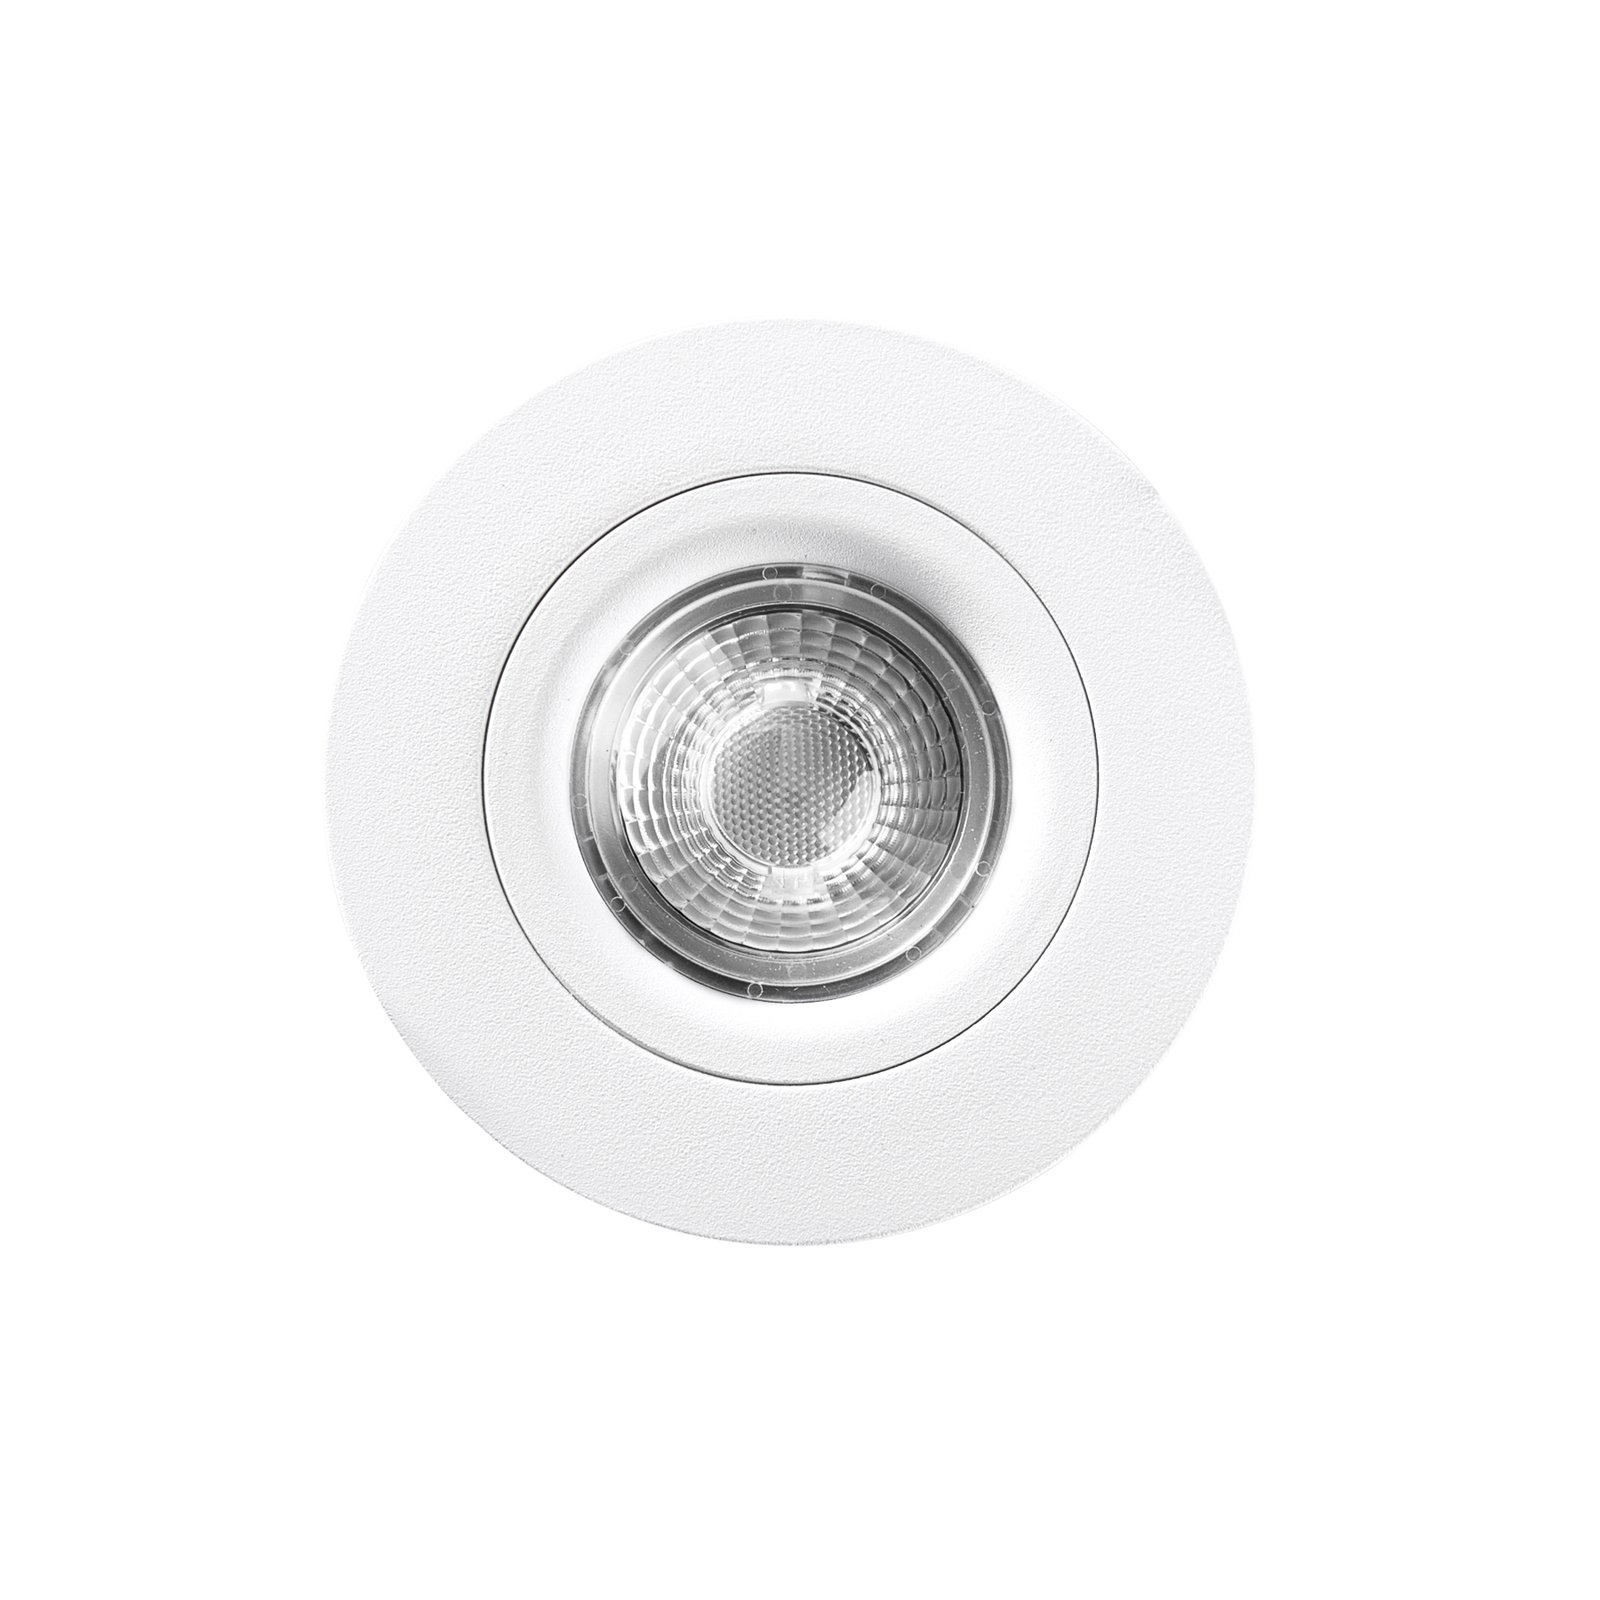 Downlight LED DL6809, okrągły, biały